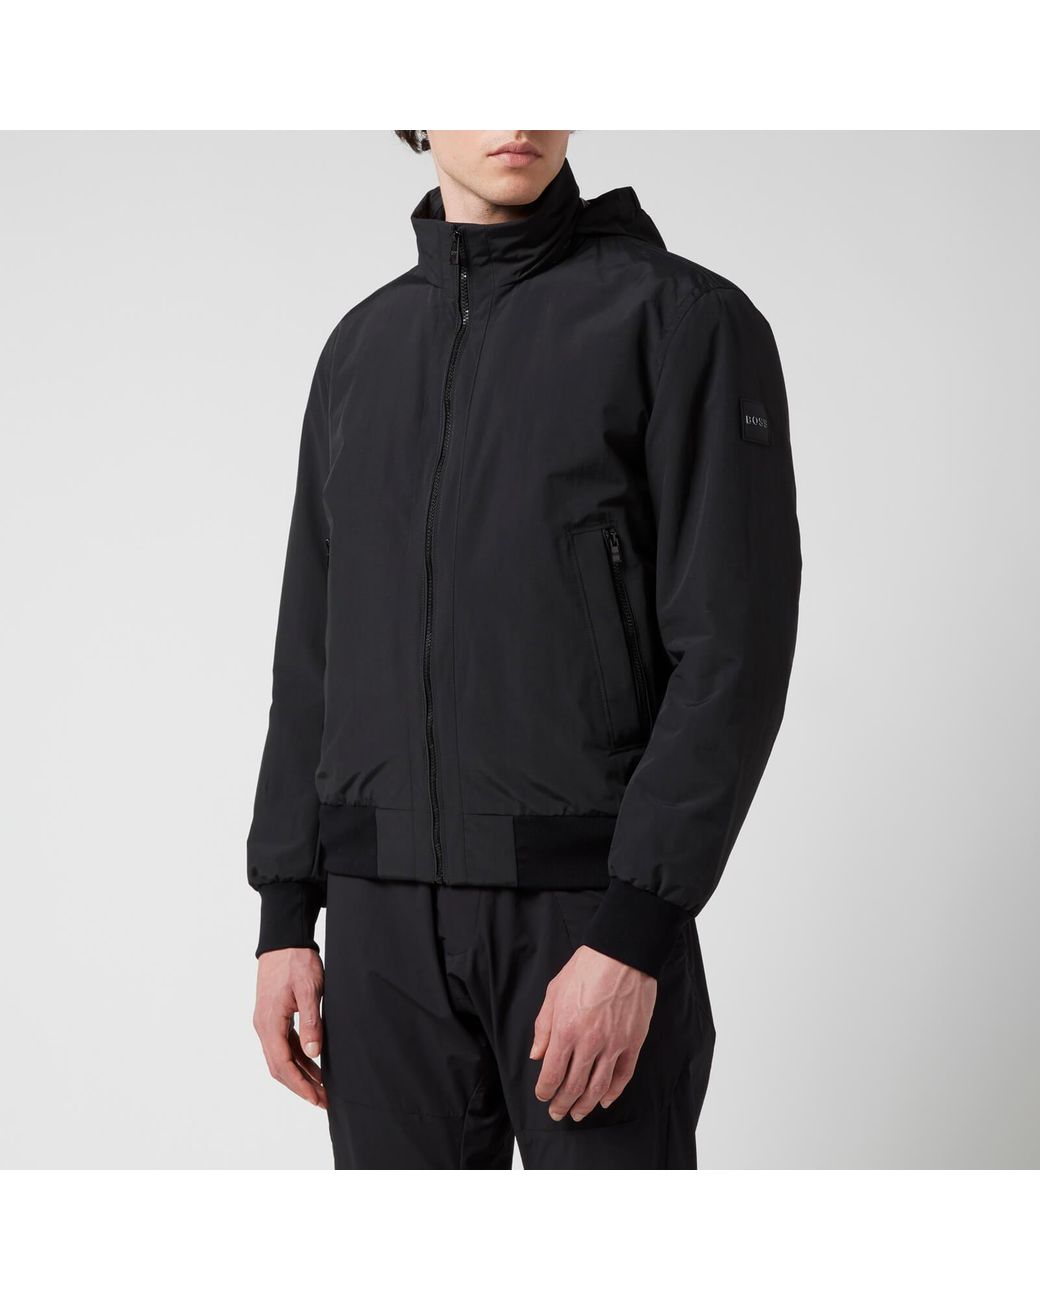 BOSS by HUGO BOSS Costa 5 Jacket in Black for Men | Lyst